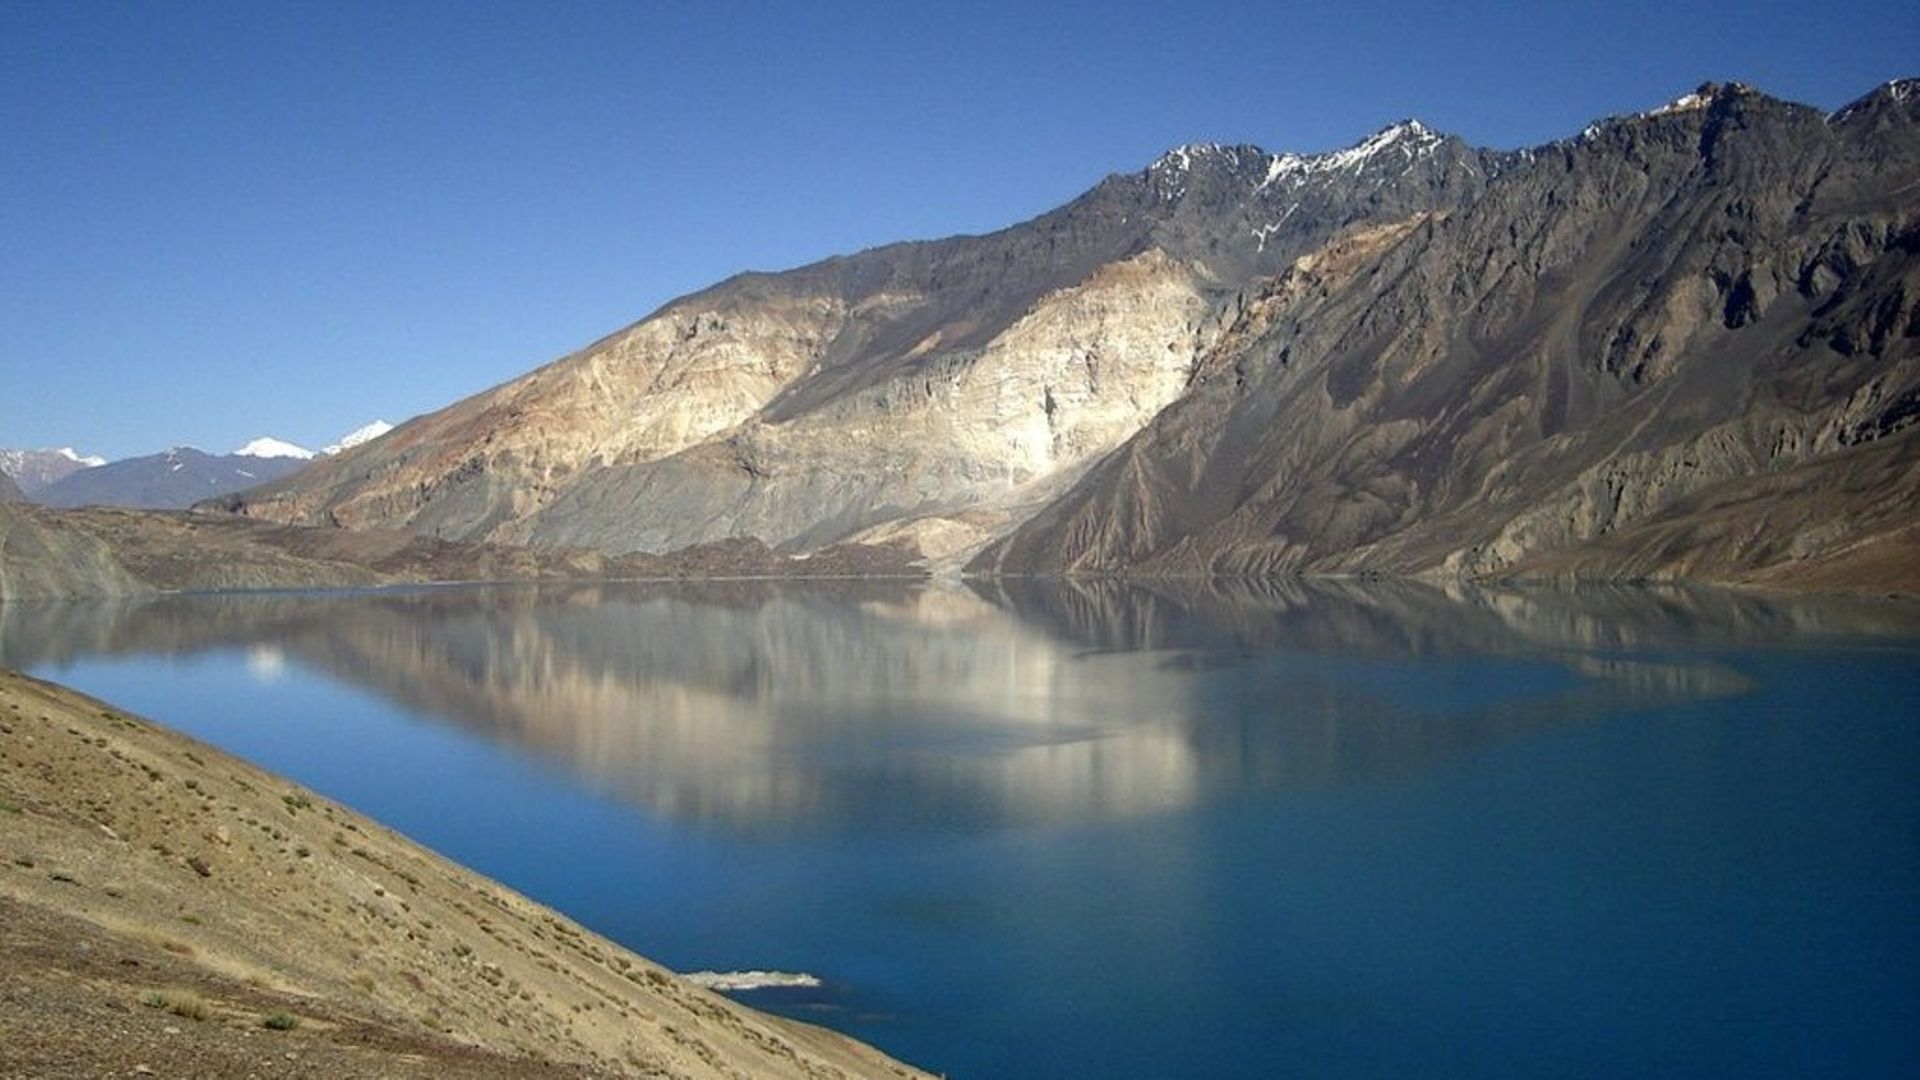 Le lac Sarez, qui culmine à 3300 m dans les montagnes du Pamir, au Tadjikistan.